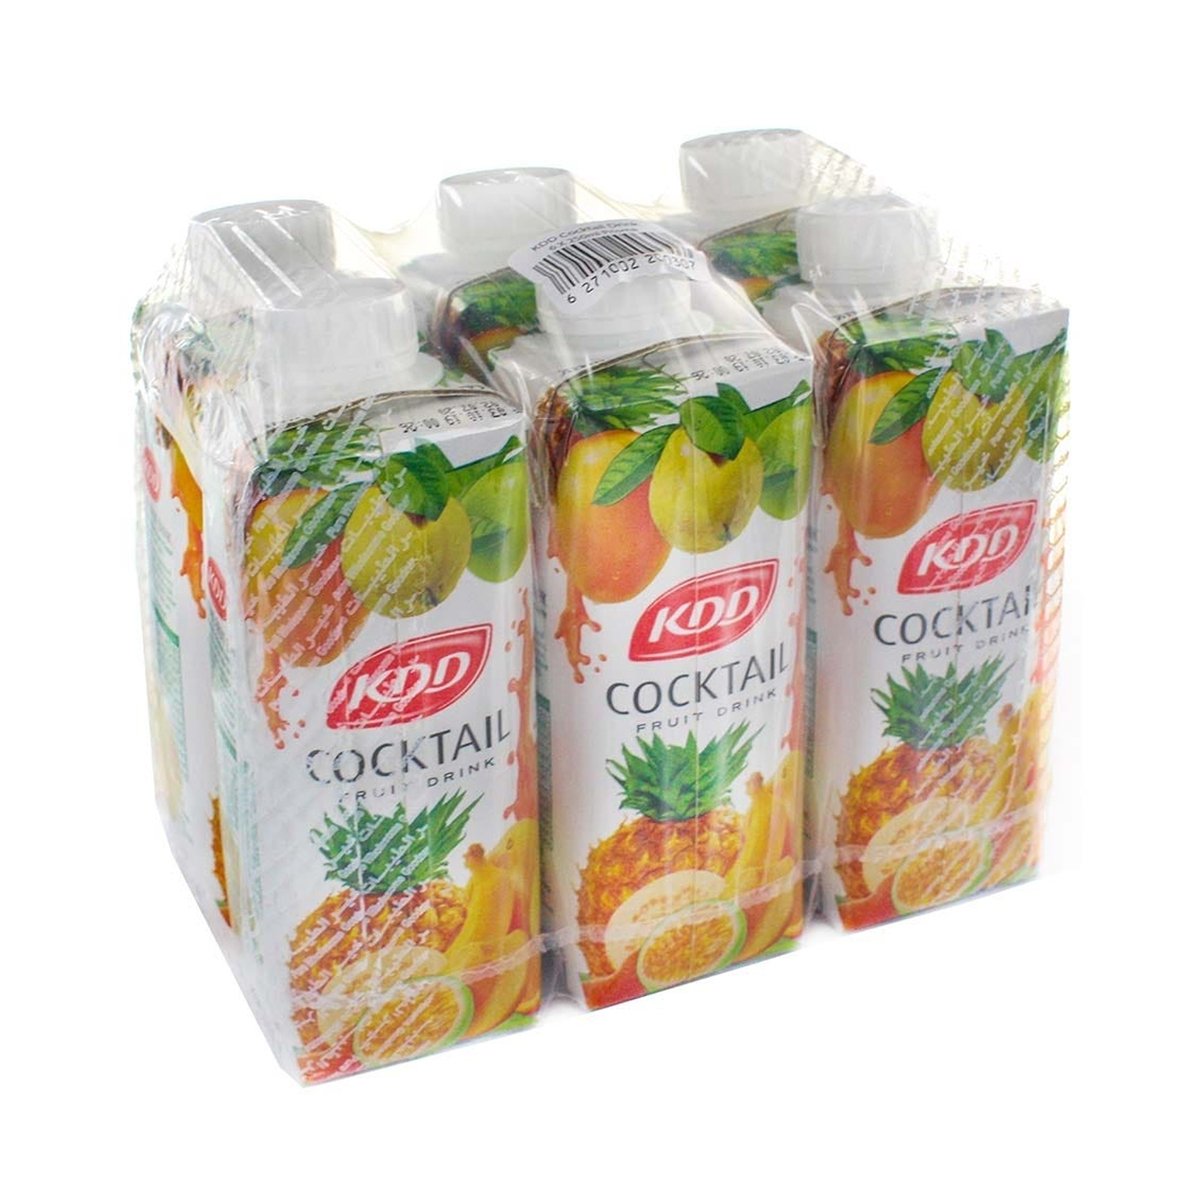 KDD Cocktail Fruit Drink 250ml